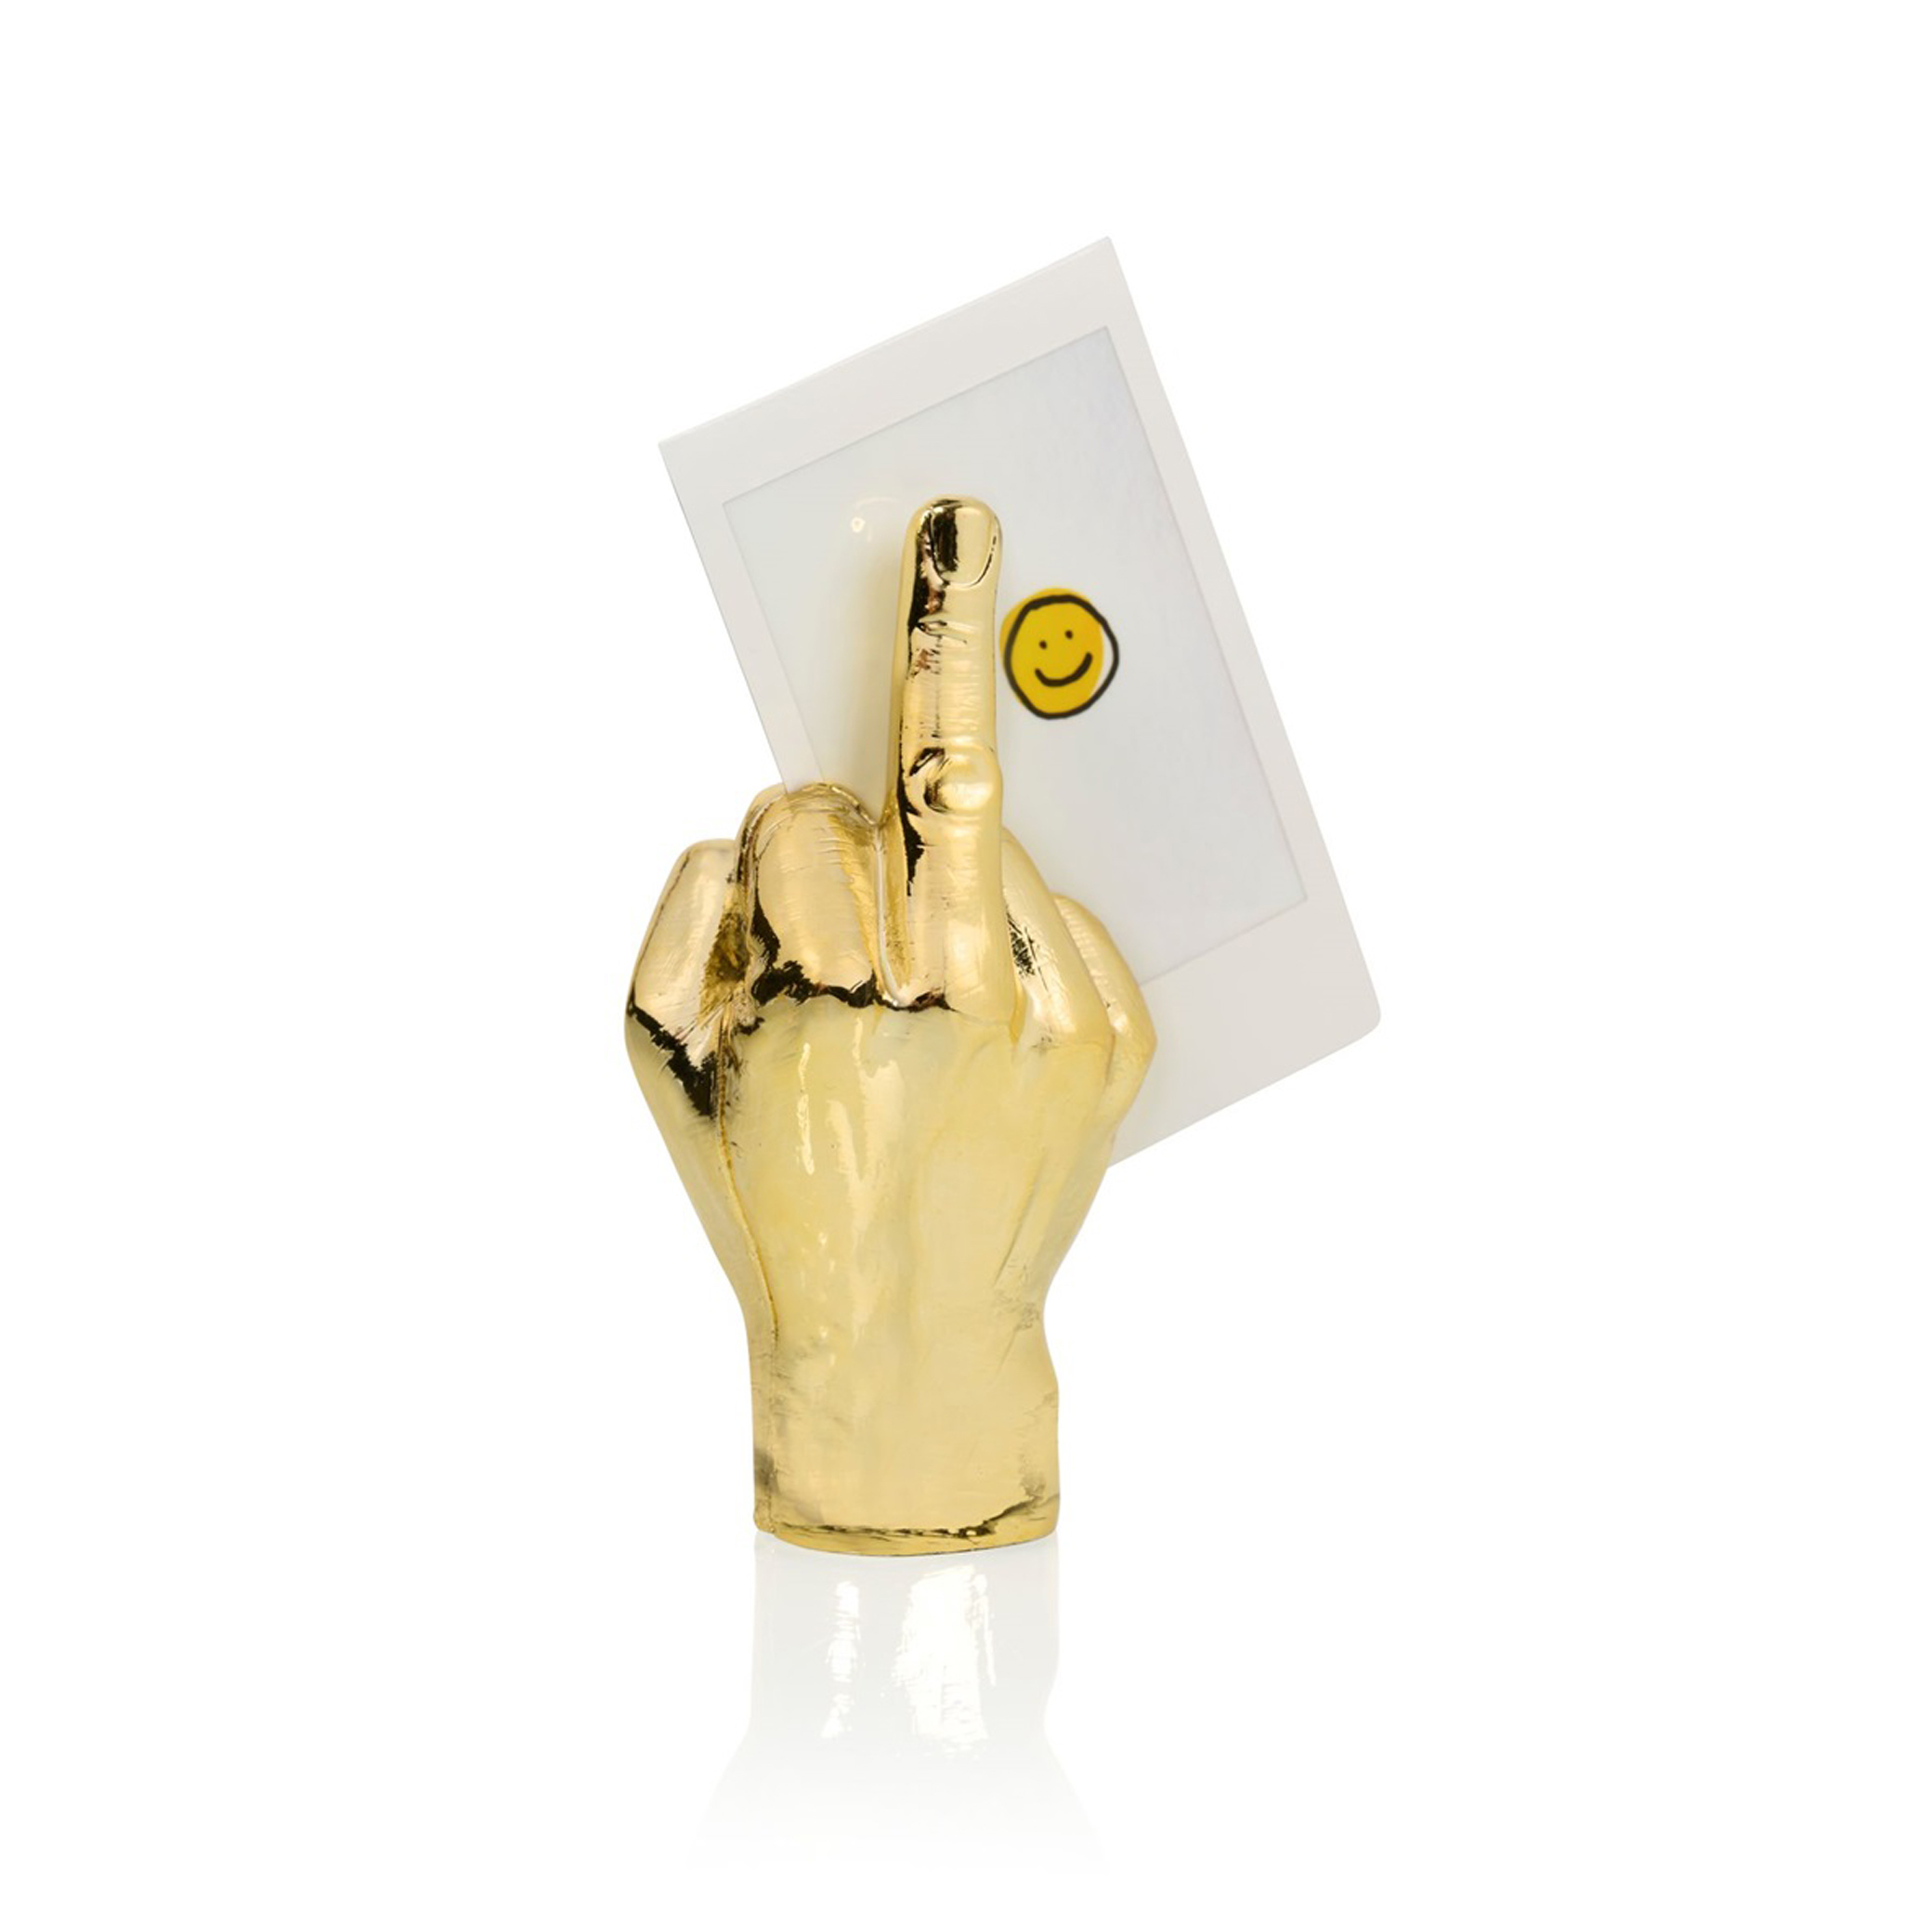 Bitten Design 'The Finger' Photo Holder - Gold